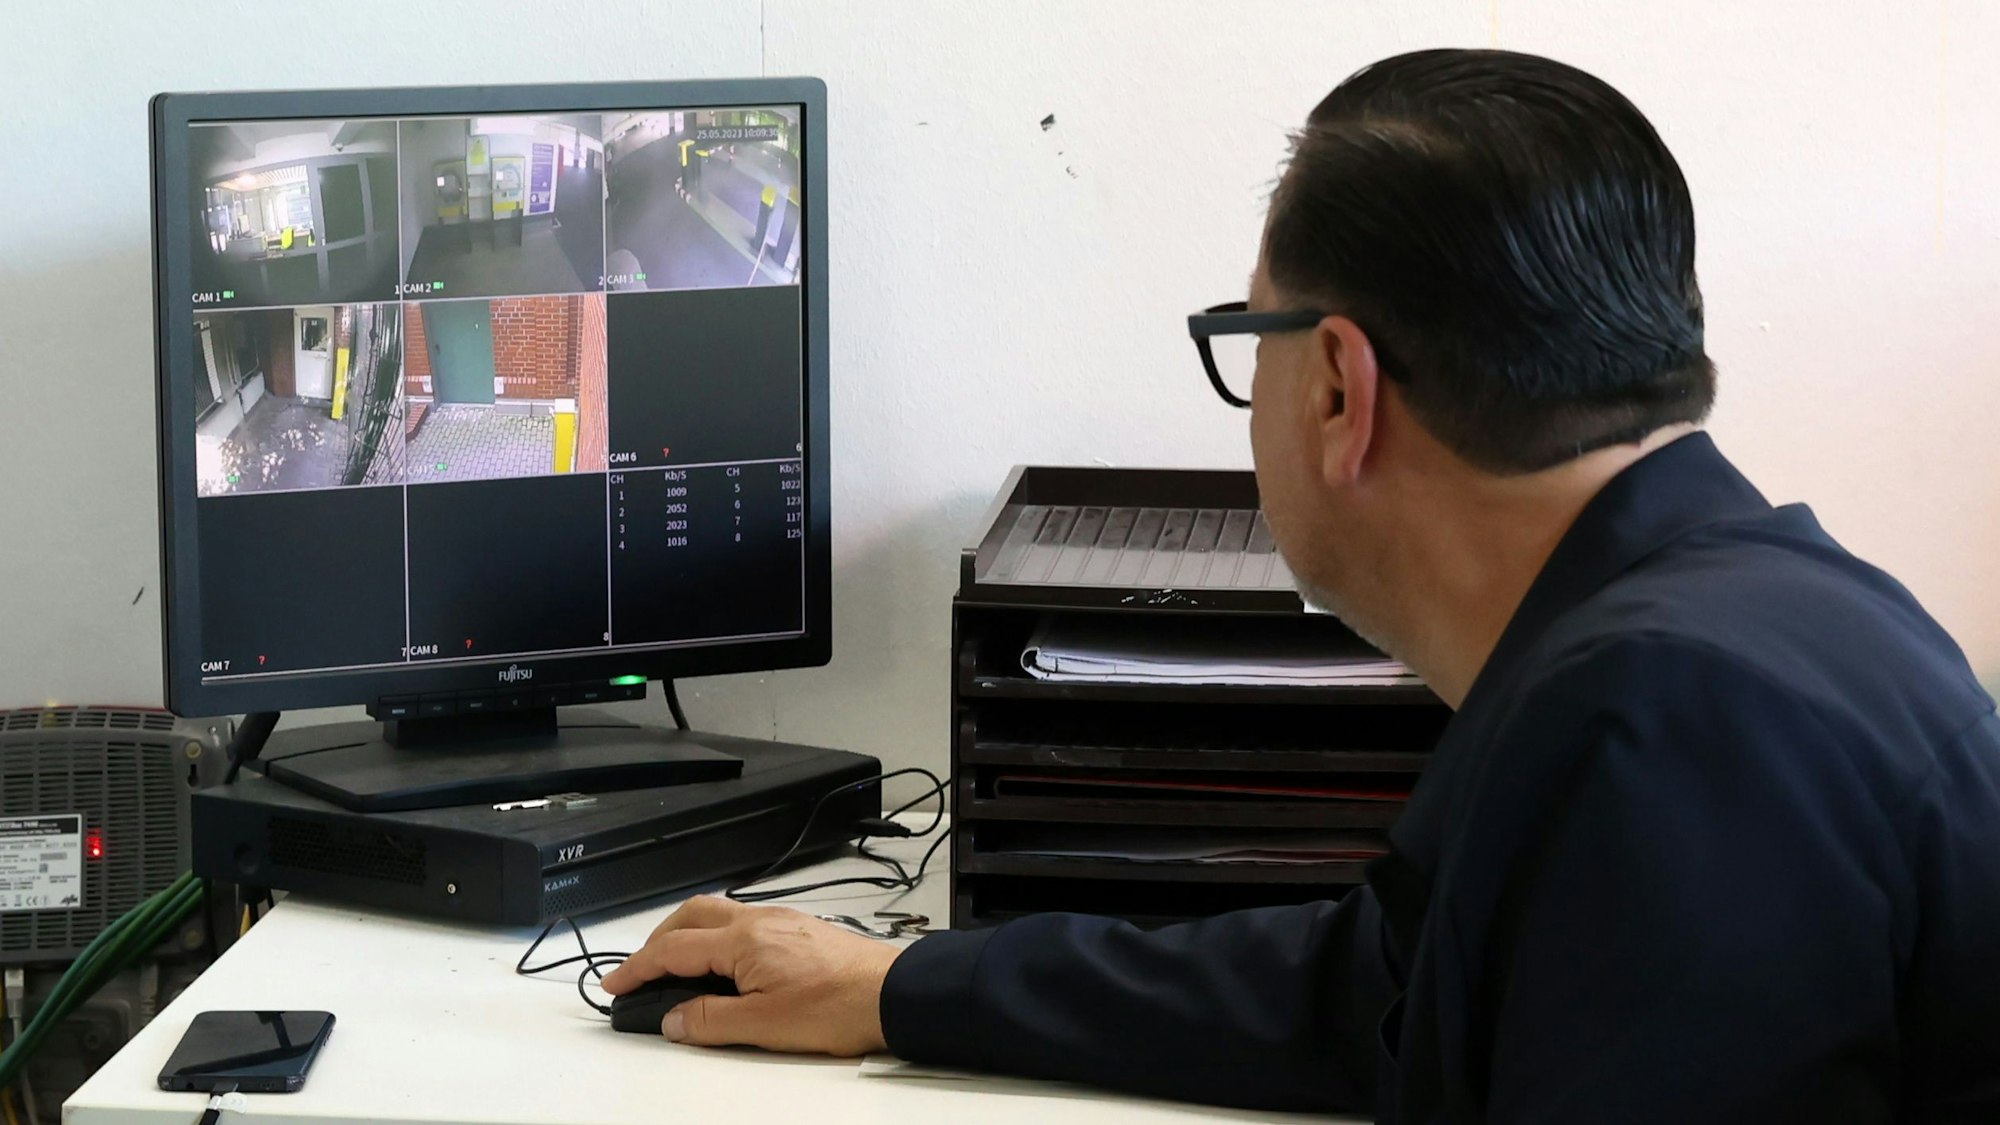 Parkhauswächter Tamer Bakirci schaut auf einen Bildschirm der Video-Überwachung.

